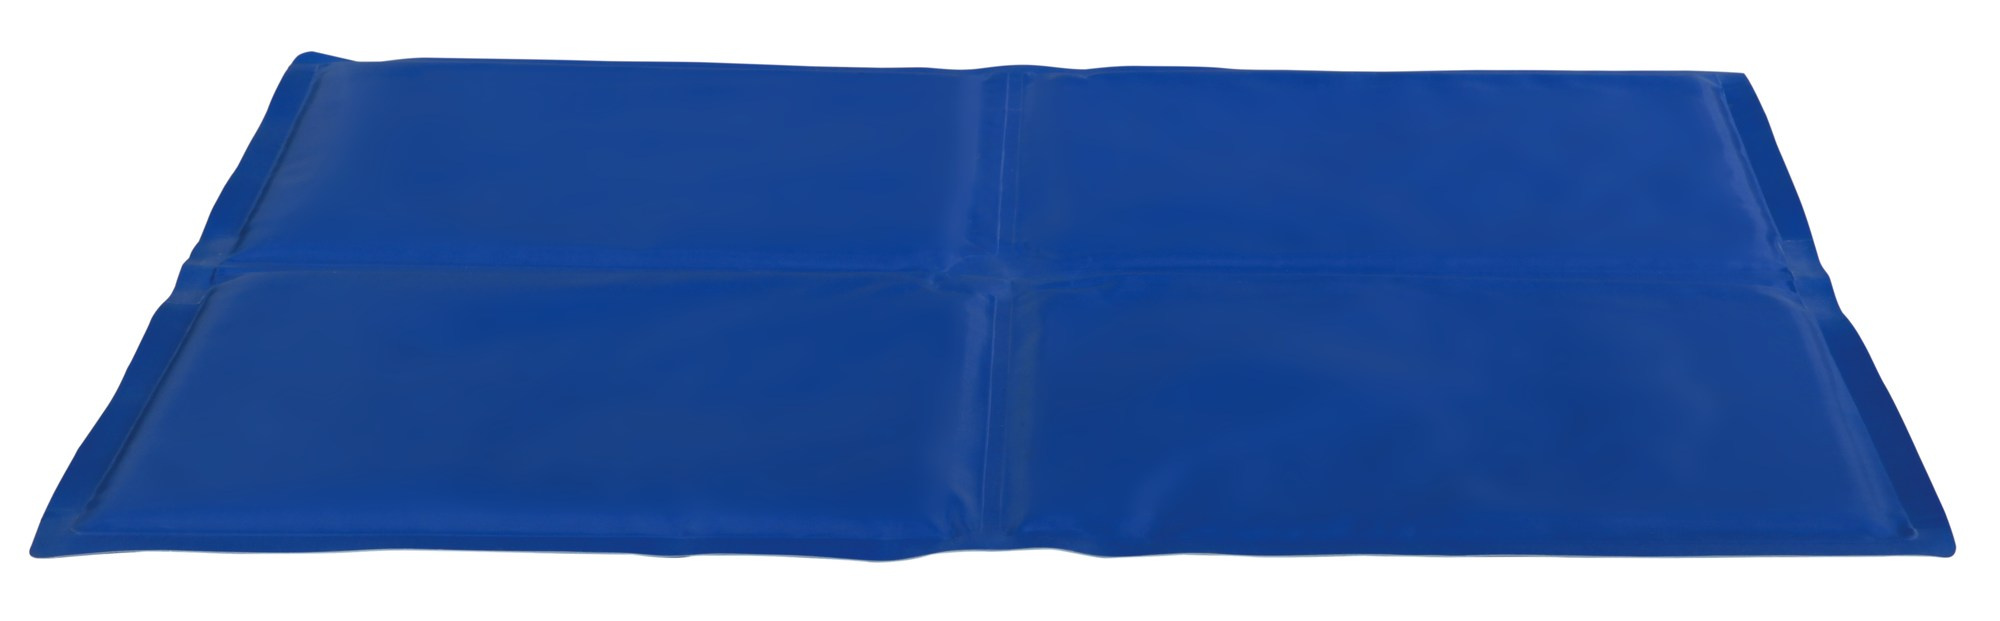 Saltea Racoritoare 90×50 cm Albastru 28686 petmart.ro